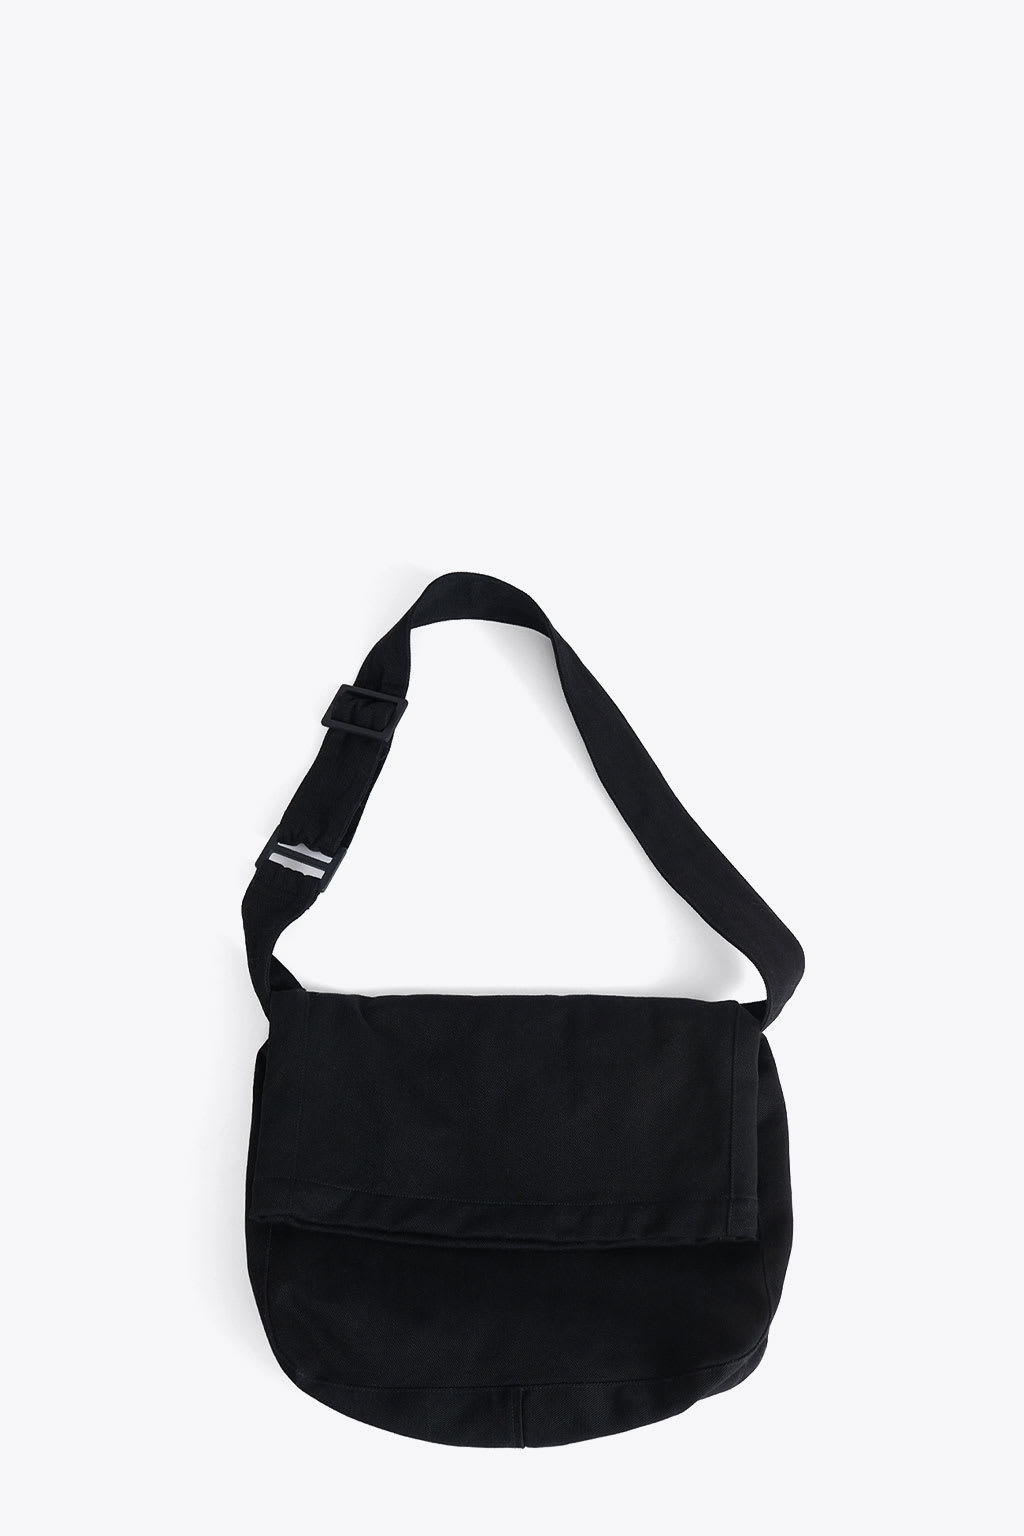 Sling Bag Black canvas bag with shoulder strap - Sling bag